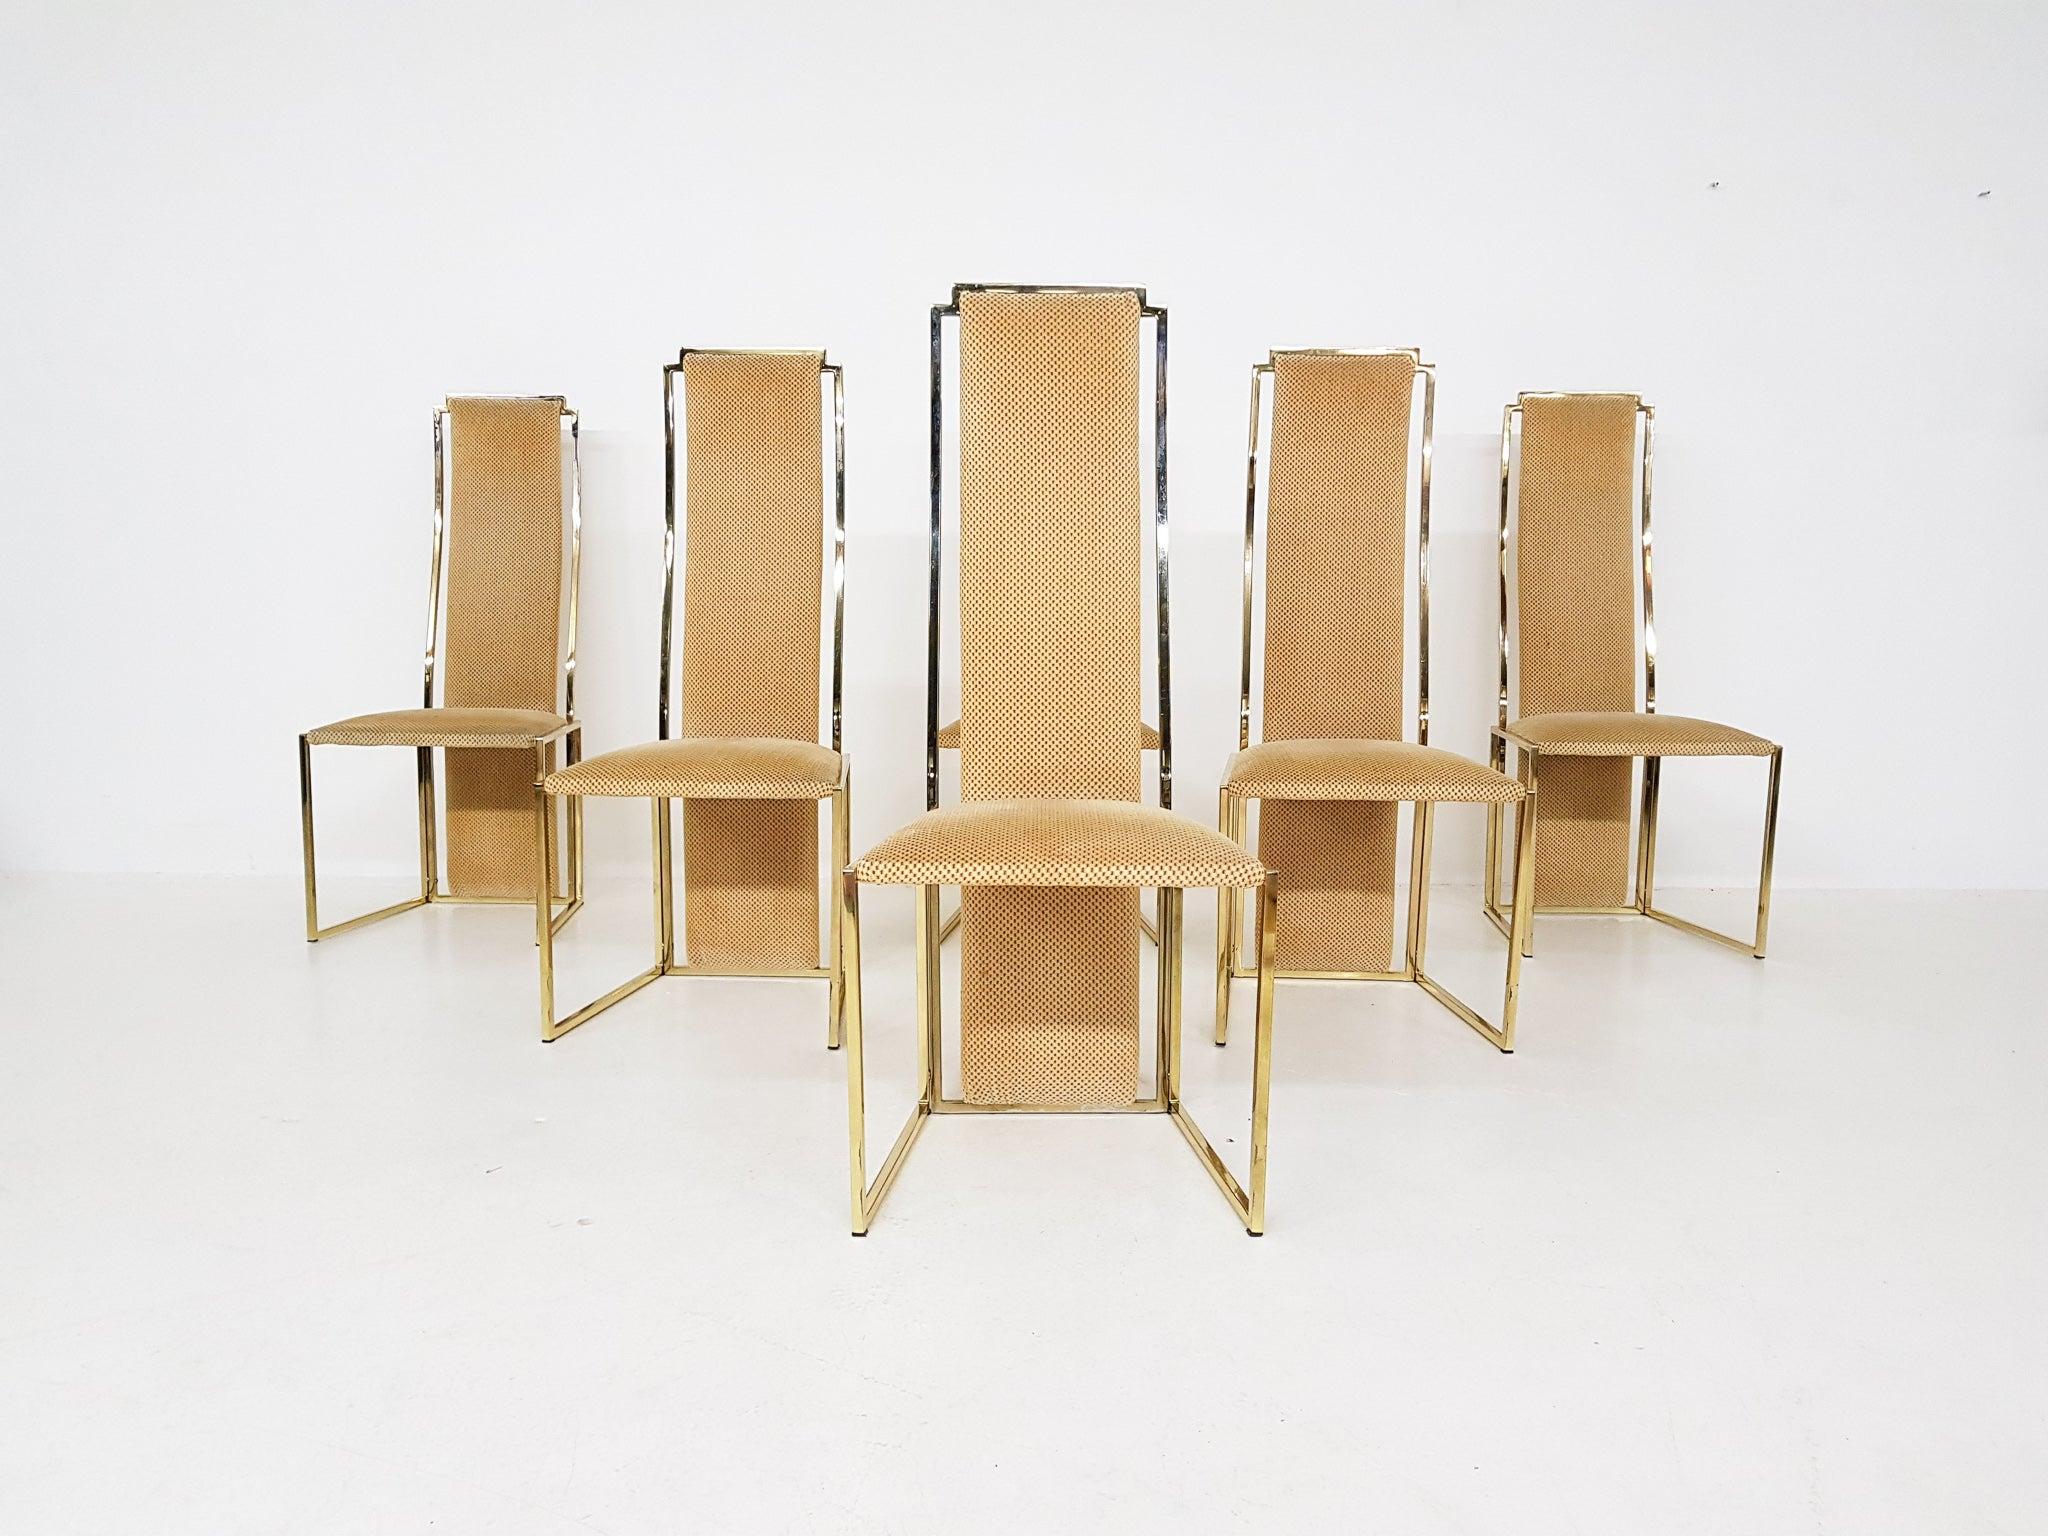 Chaises de salle à manger haut de gamme à dossier haut en métal doré d'Alain Delon. Fabriqué et conçu en France dans les années 1980.

Un ensemble de six chaises de salle à manger en métal doré et en tissu. Les chaises ont des formes géométriques